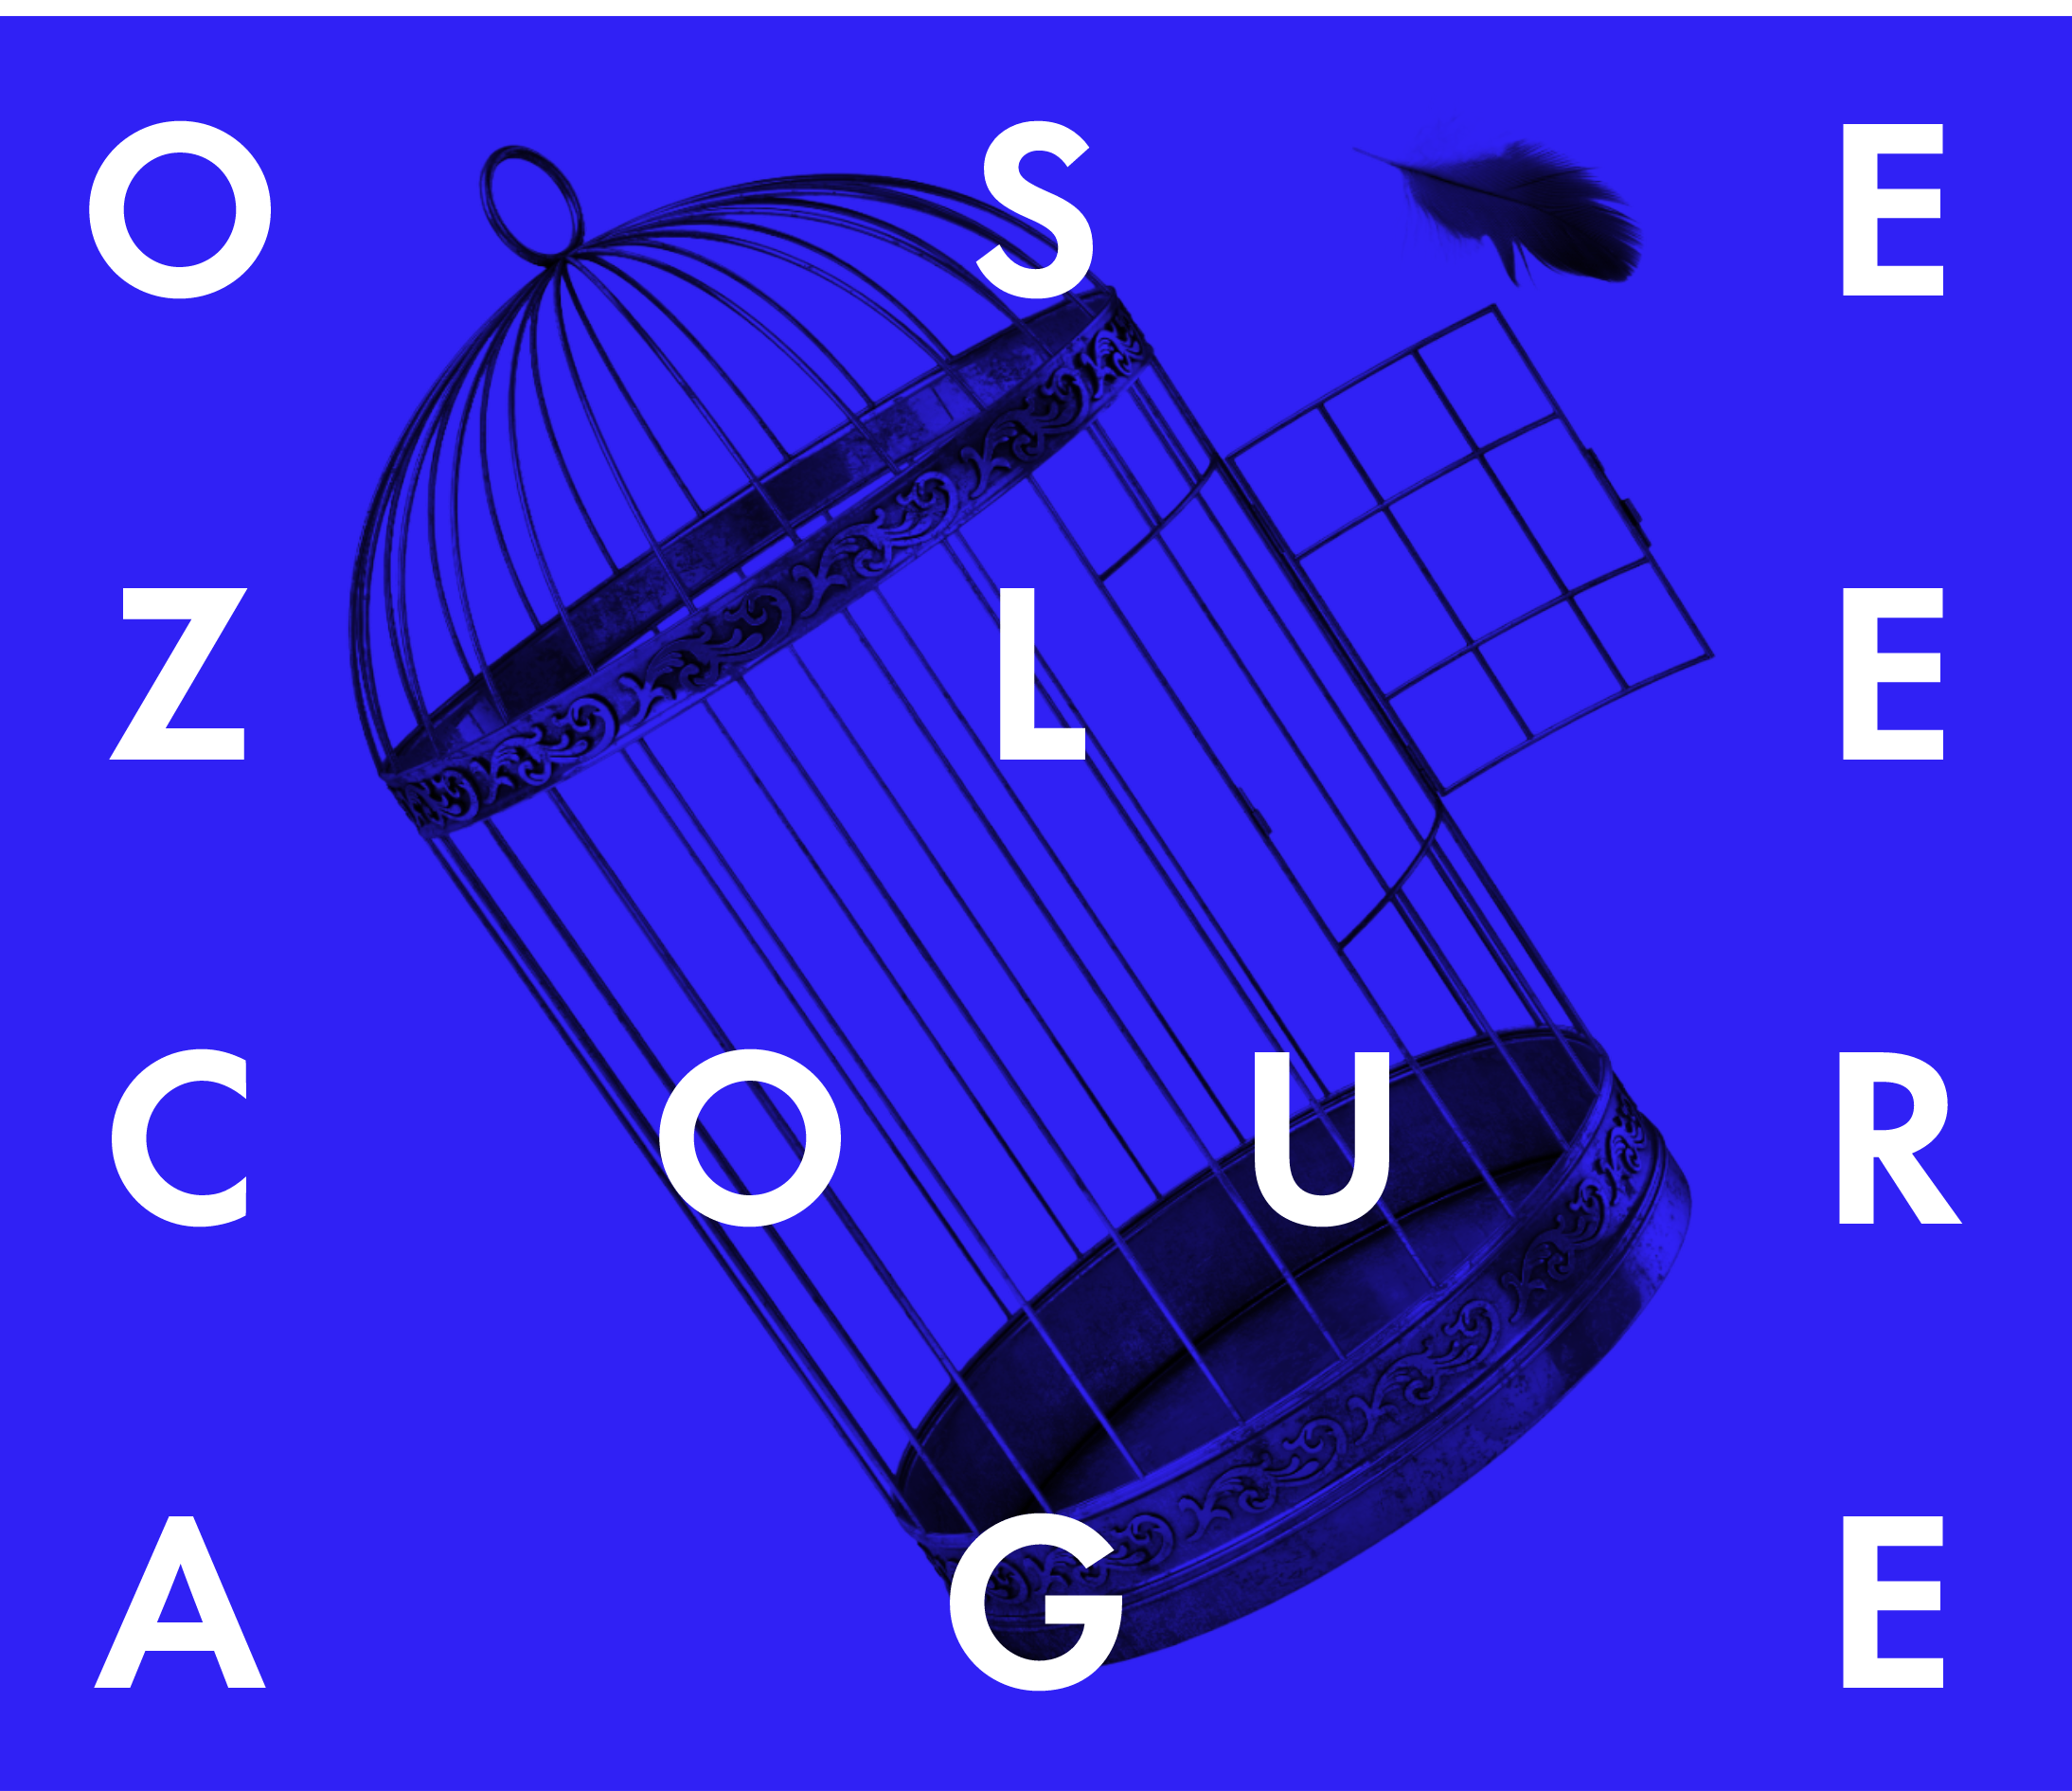 Les mots « OSEZ LE COURAGE » en majuscules blanches sur un fond bleu avec, en arrière-plan, l’image d’une cage d’oiseau inclinée vers la gauche. »